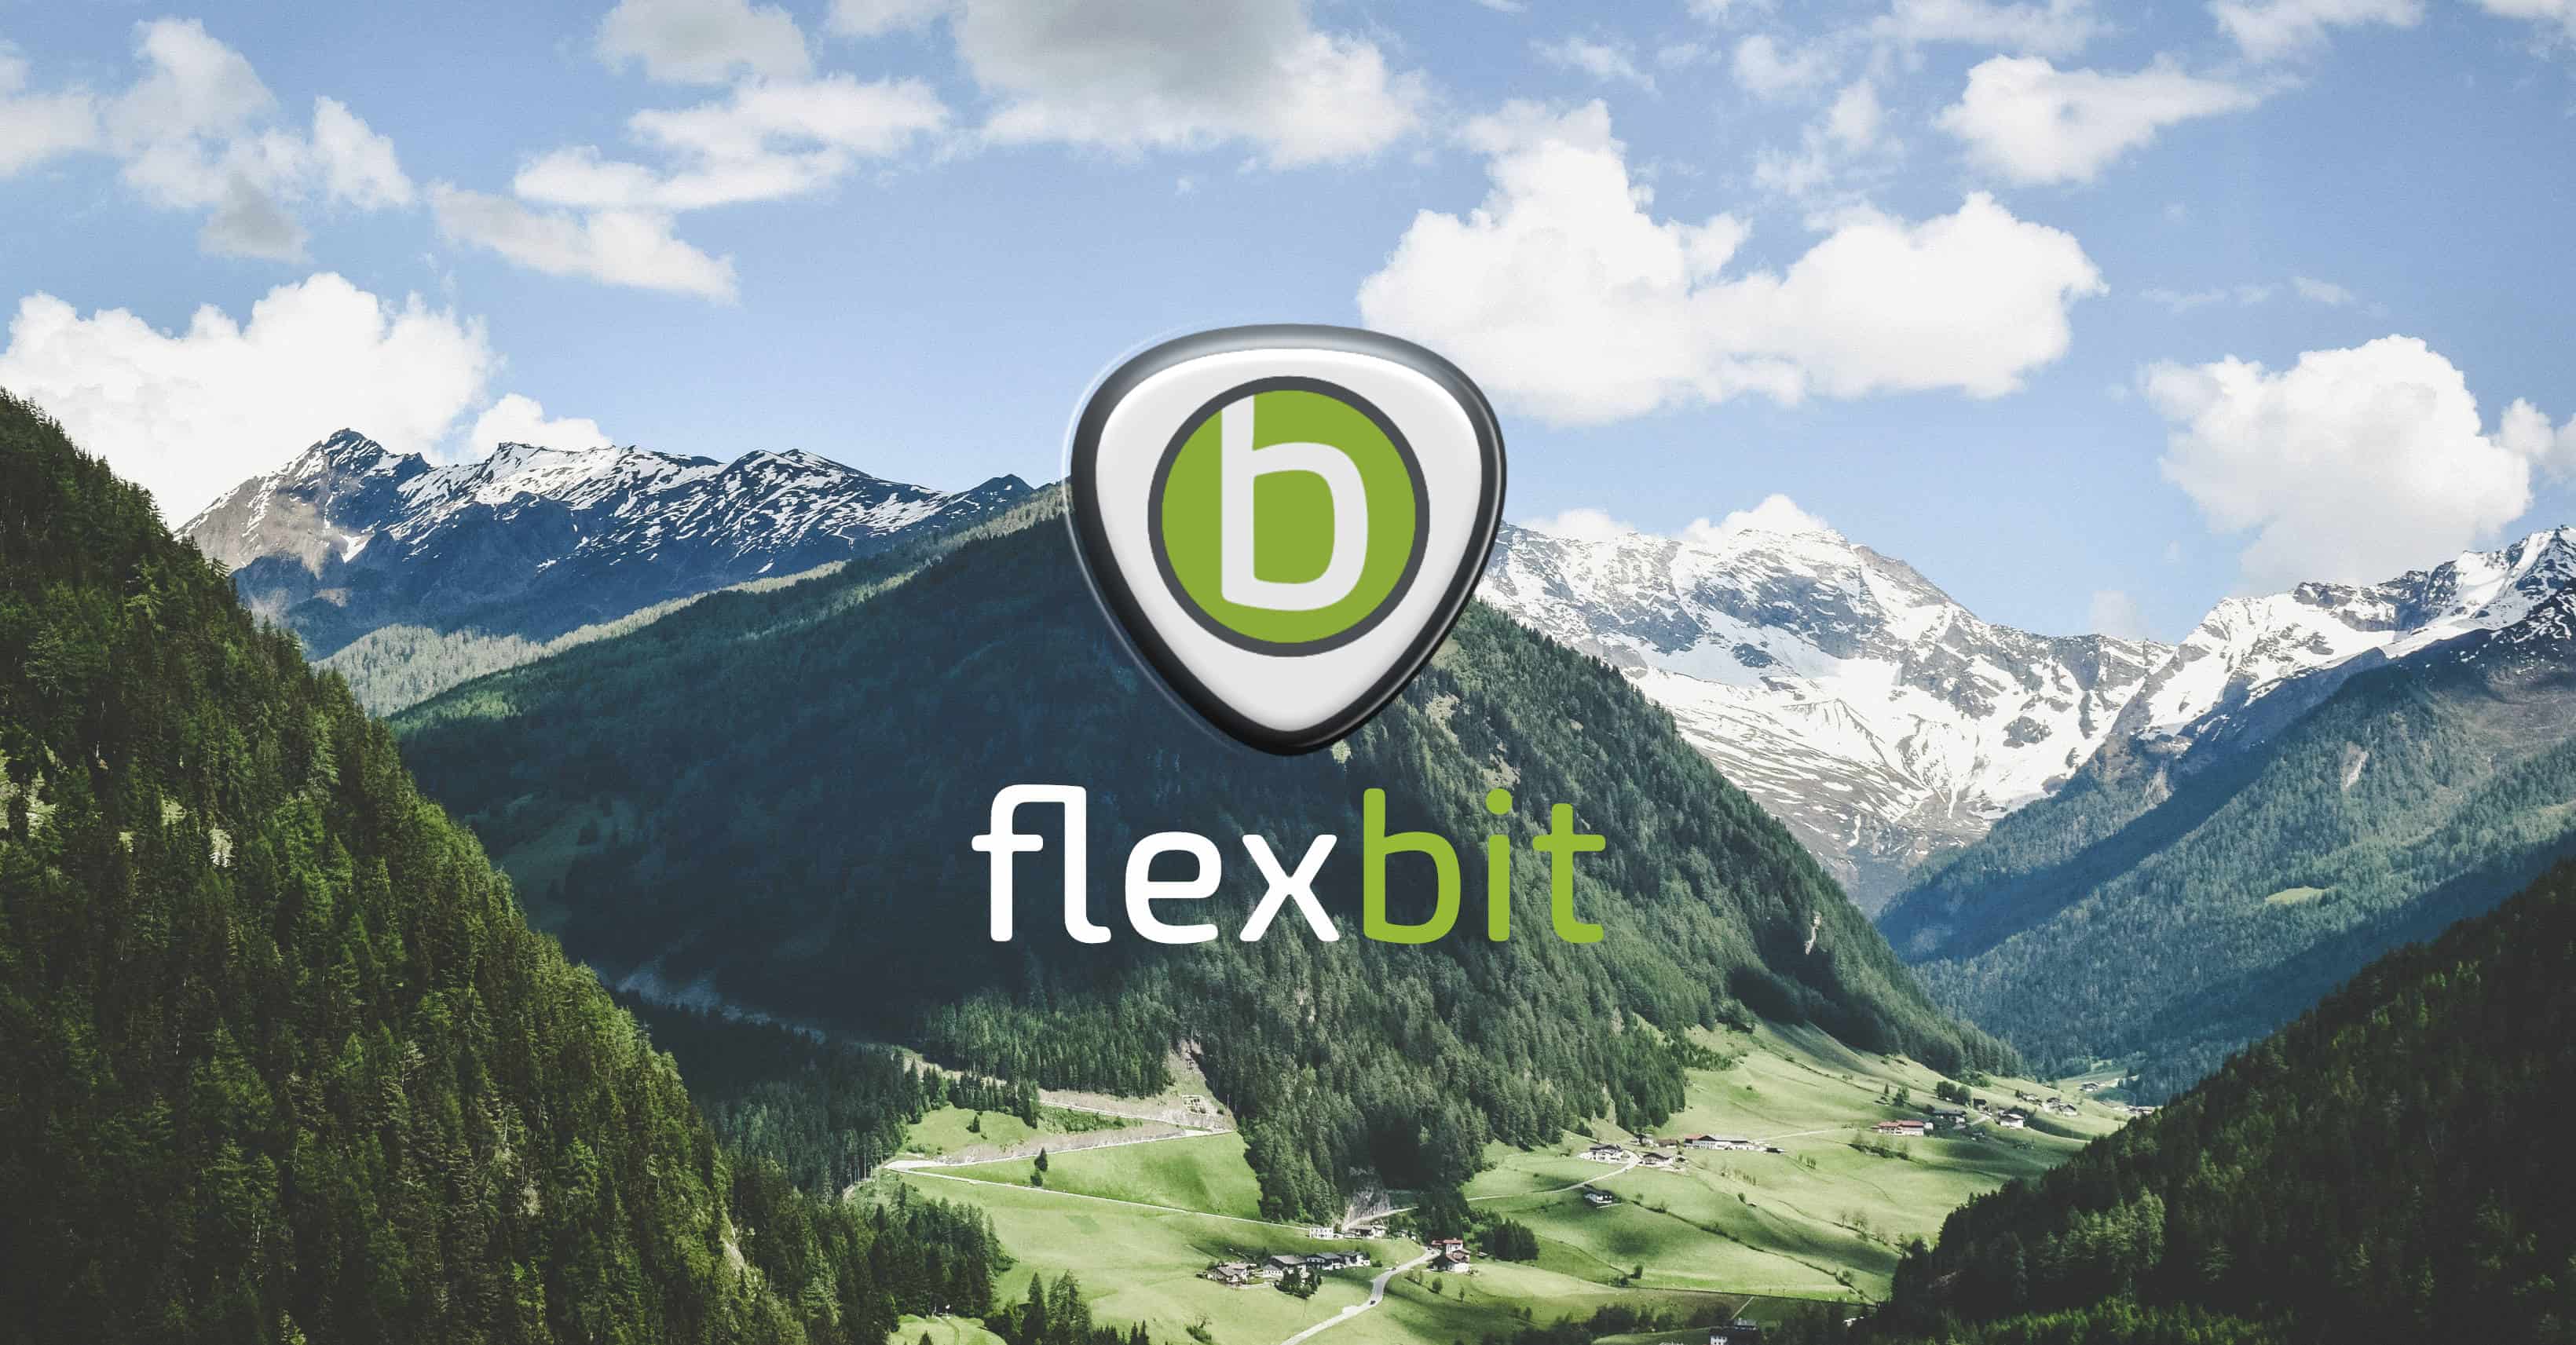 (c) Flexbit.at